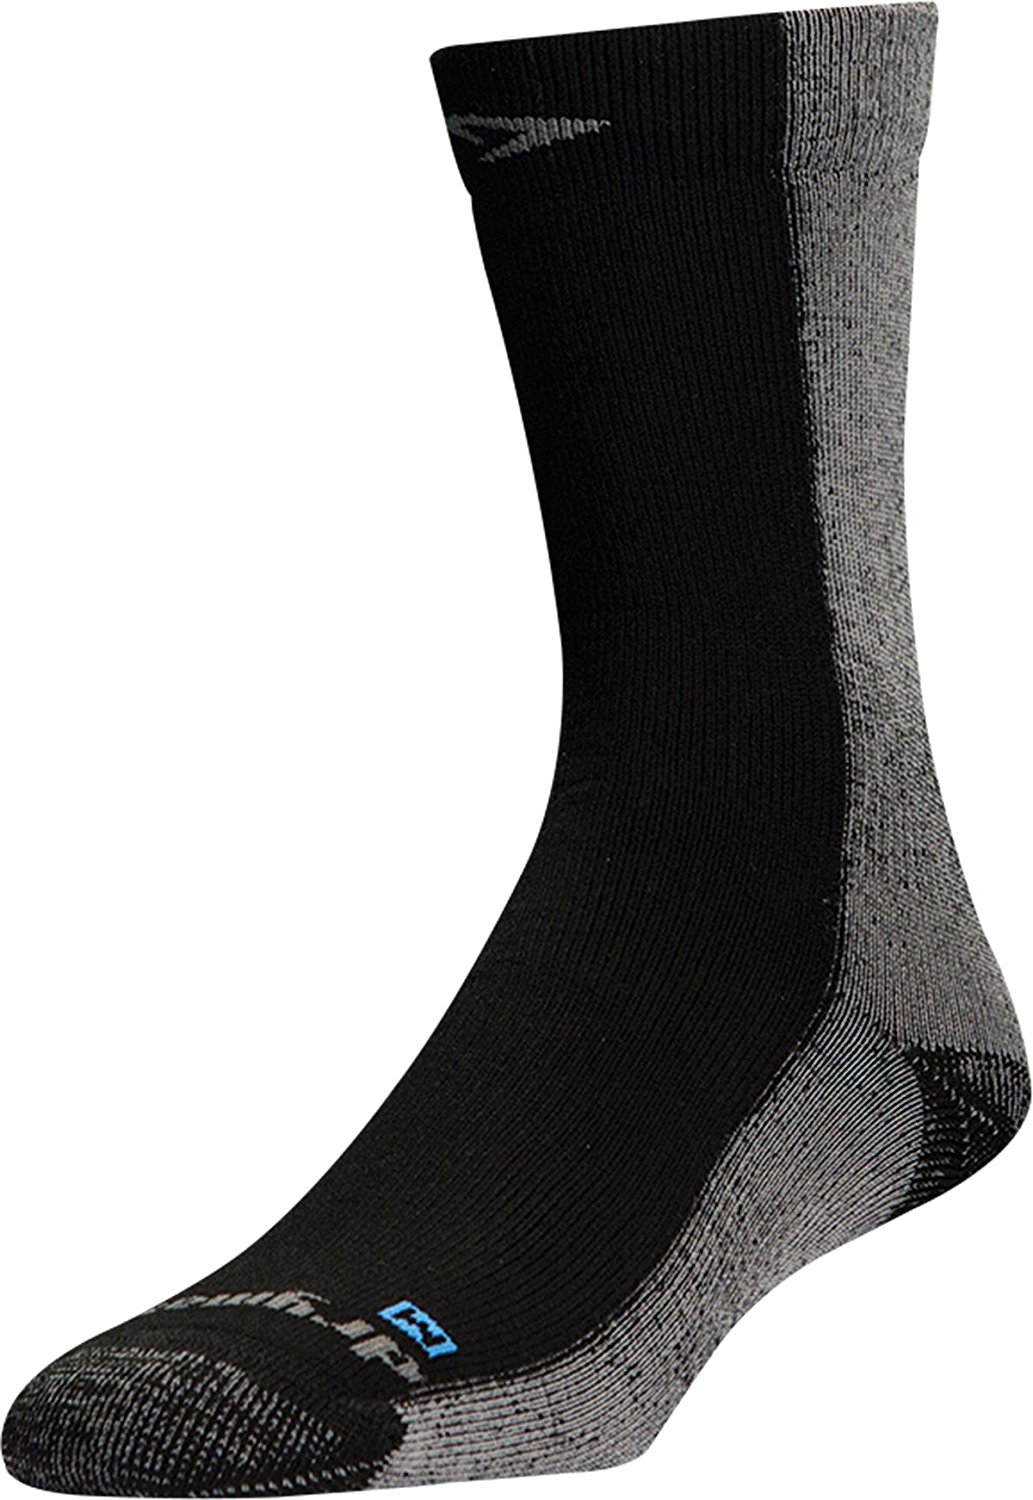 Drymax running socks - 01